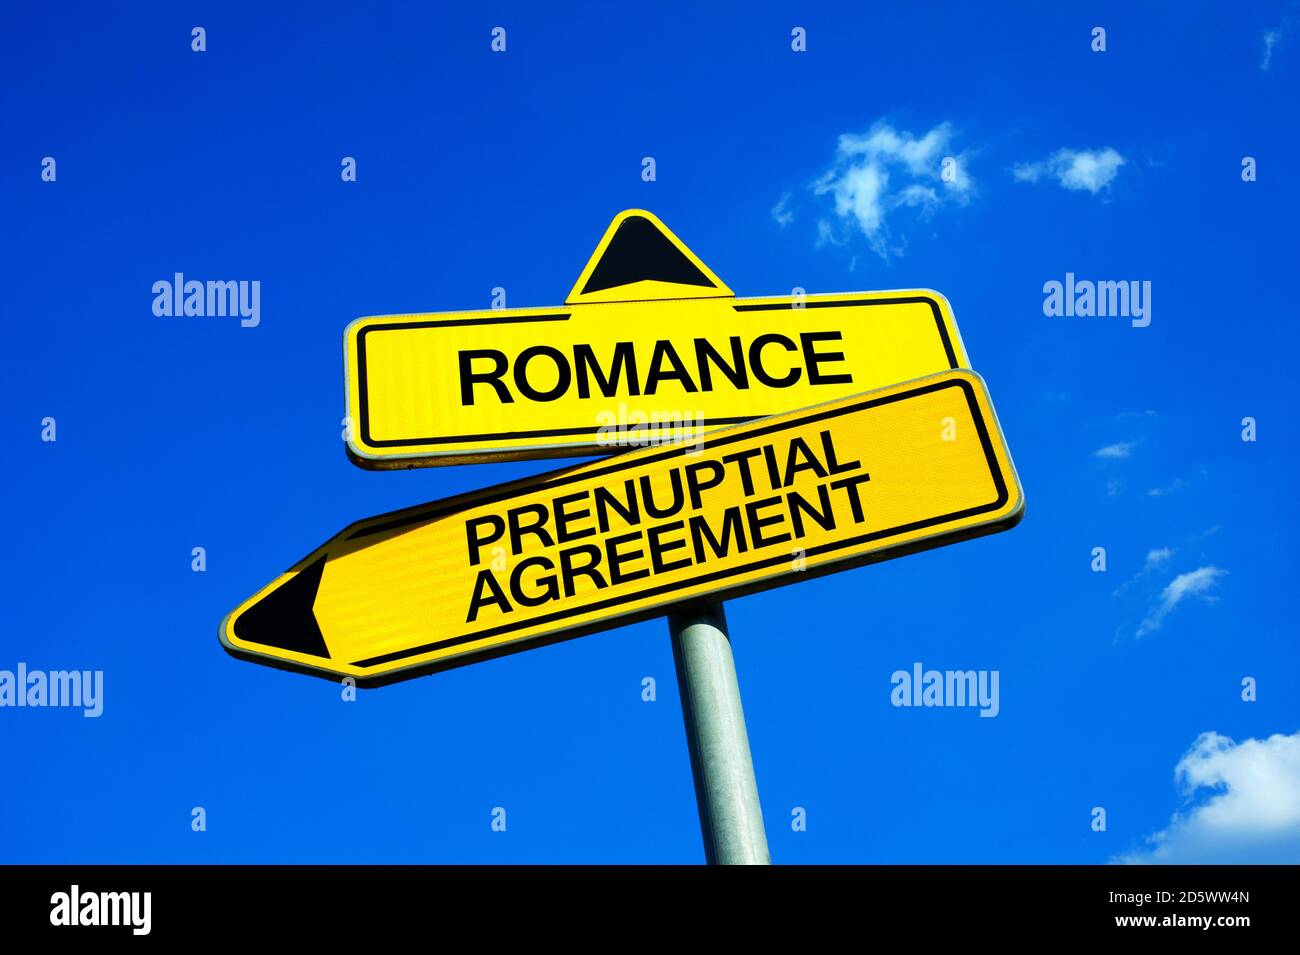 Romanticismo vs accordo prenuptial - segnale di traffico con due opzioni - fiducia tra marito e moglie durante il matrimonio vs sicurezza e protezione dei coniugi Foto Stock